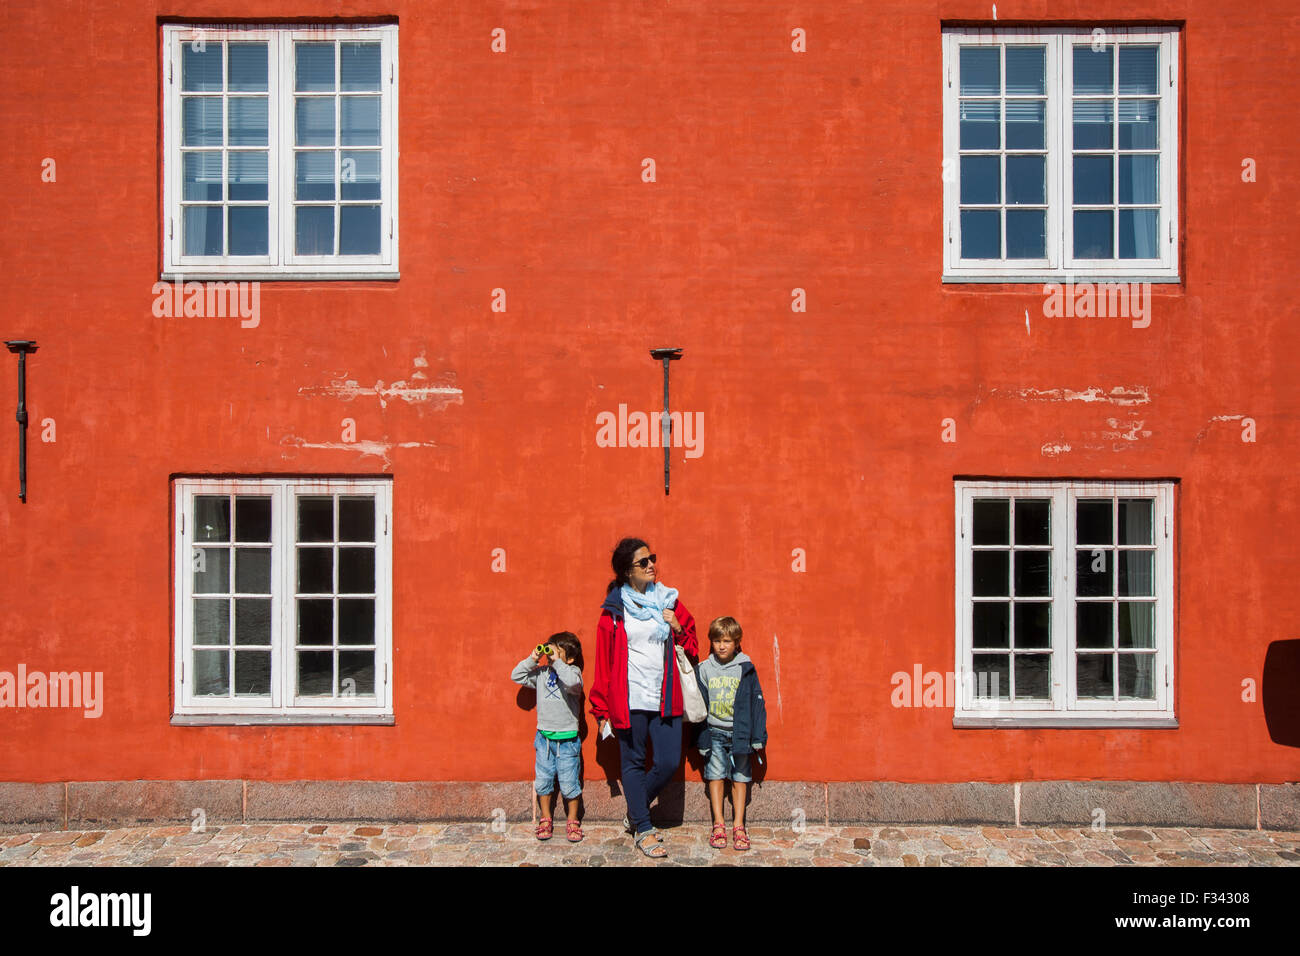 Kopenhagen, Dänemark -18 Aug 2015- Mutter und zwei Kinder auf einer roten Mauer bei der Kastellet Militärfotification. Stockfoto